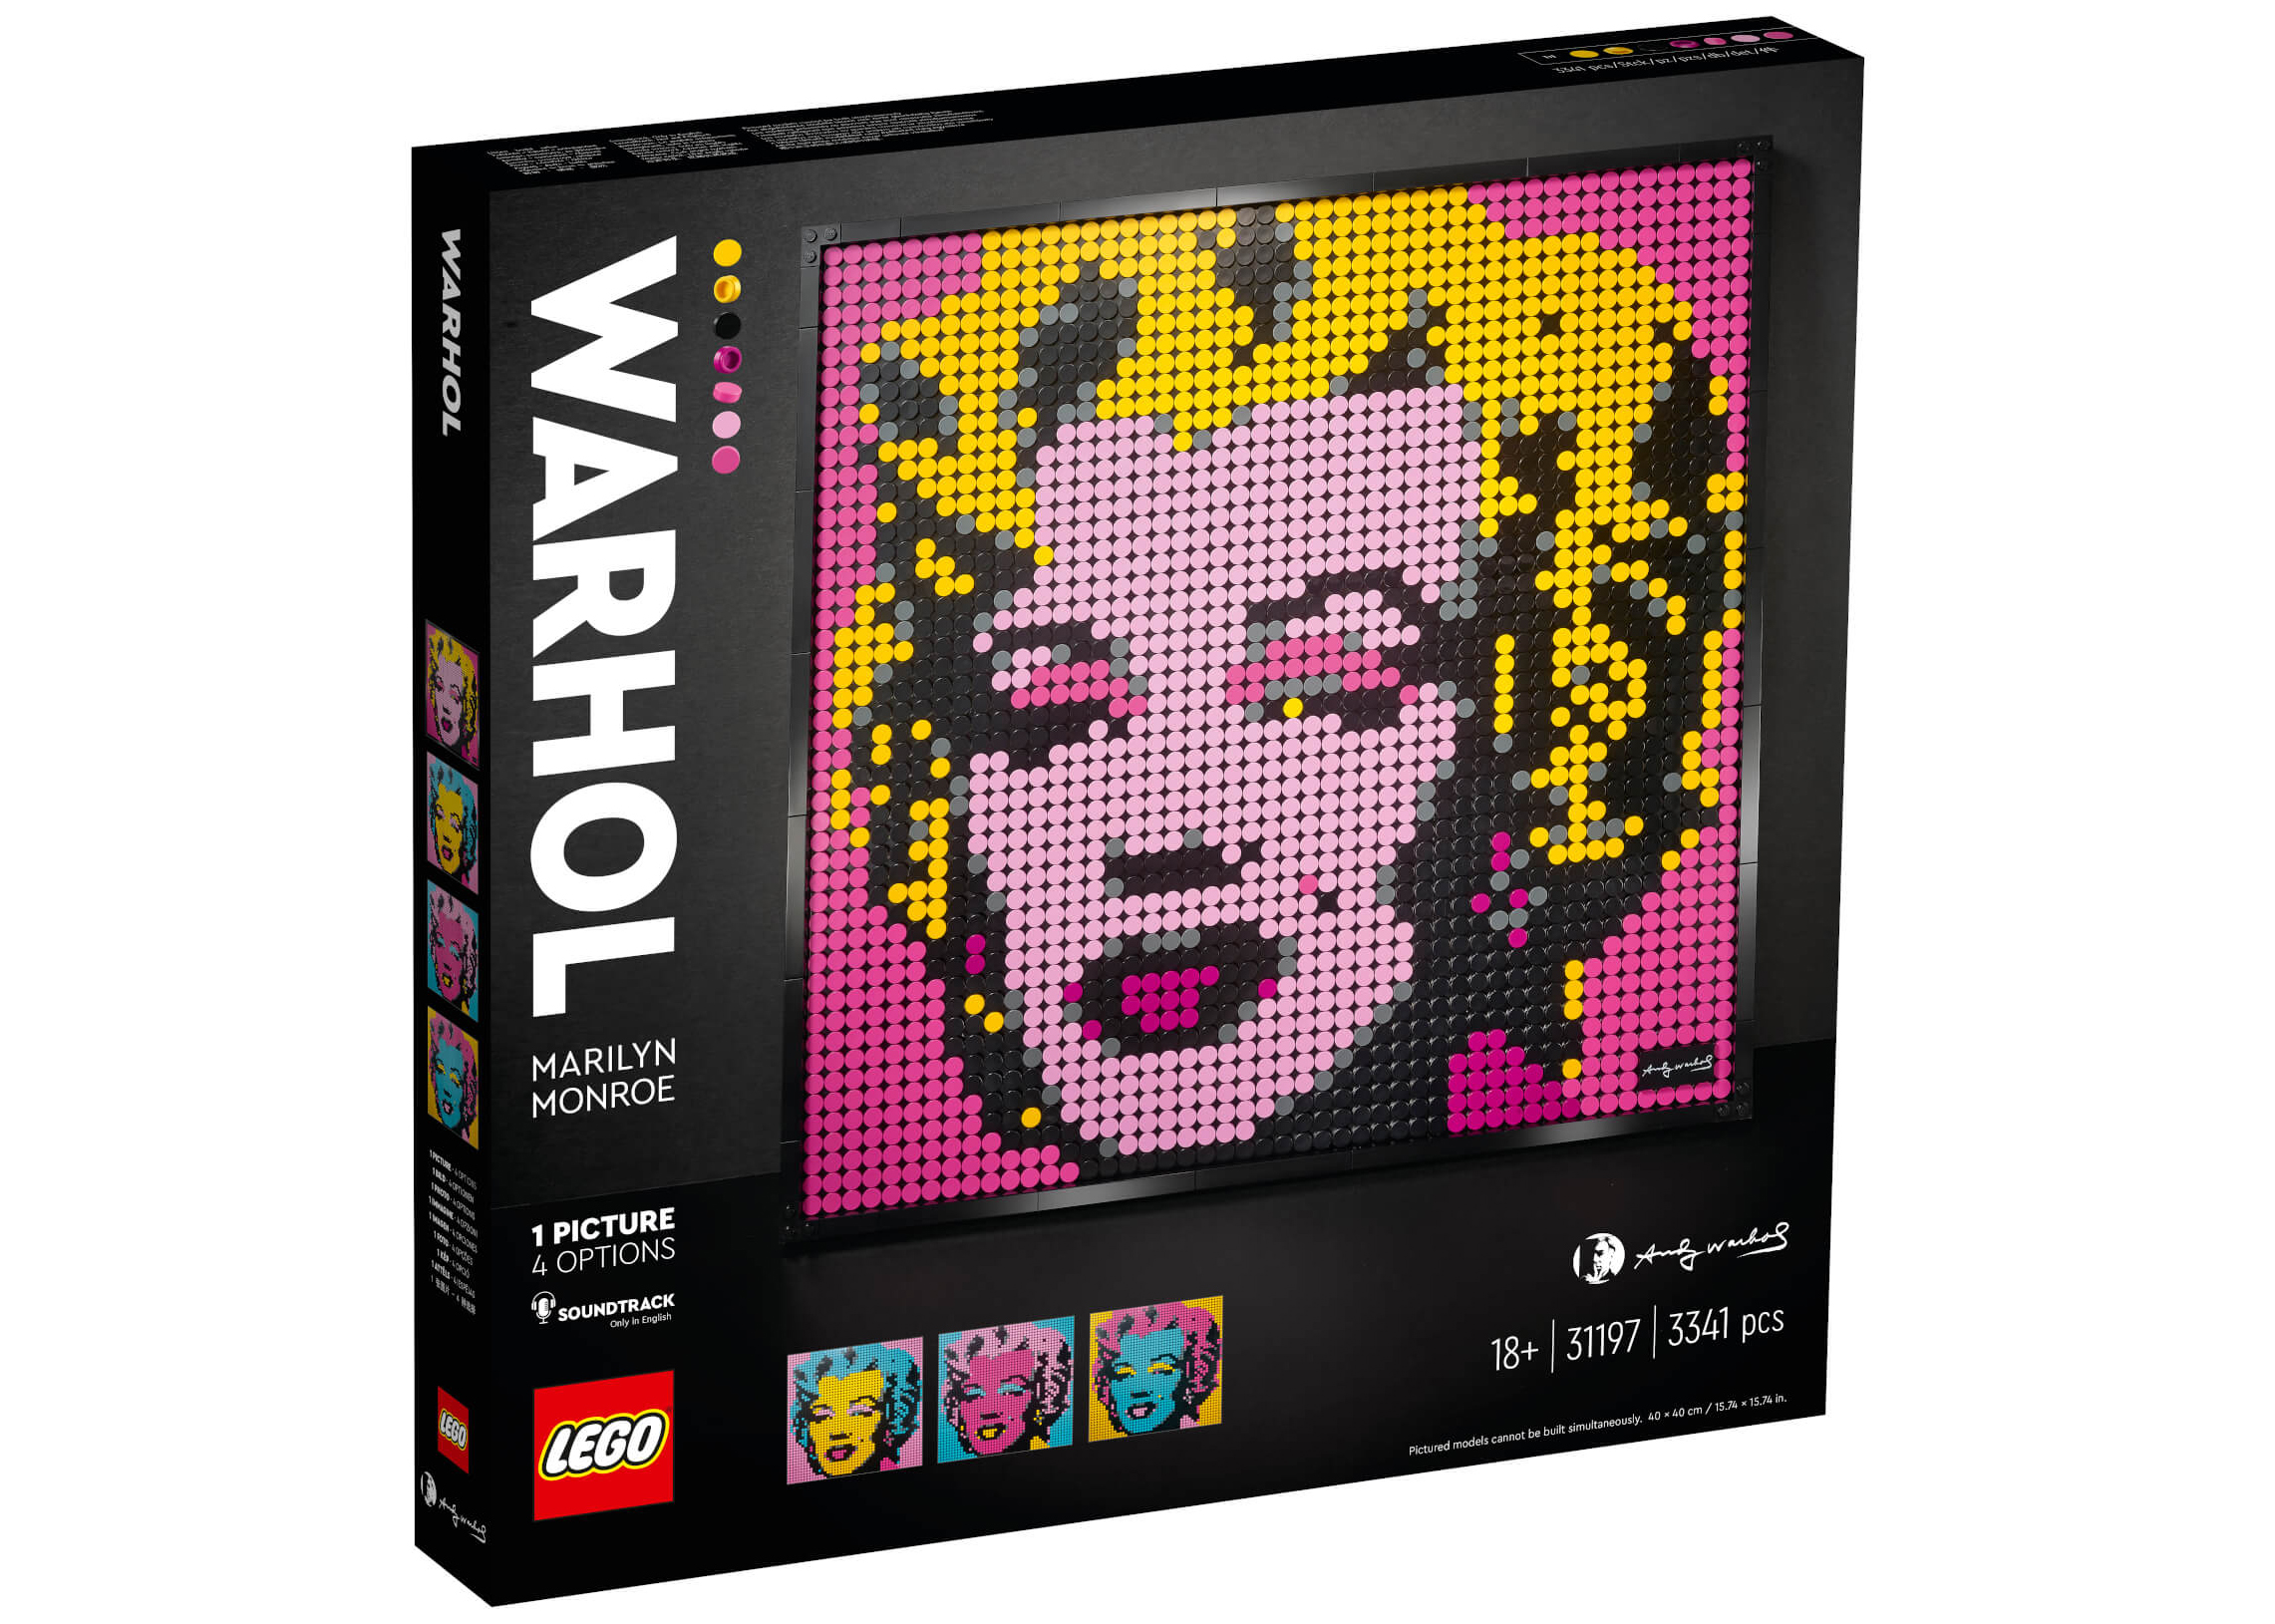 LEGO Andy Warhol Marilyn Monroe Set 31197 -